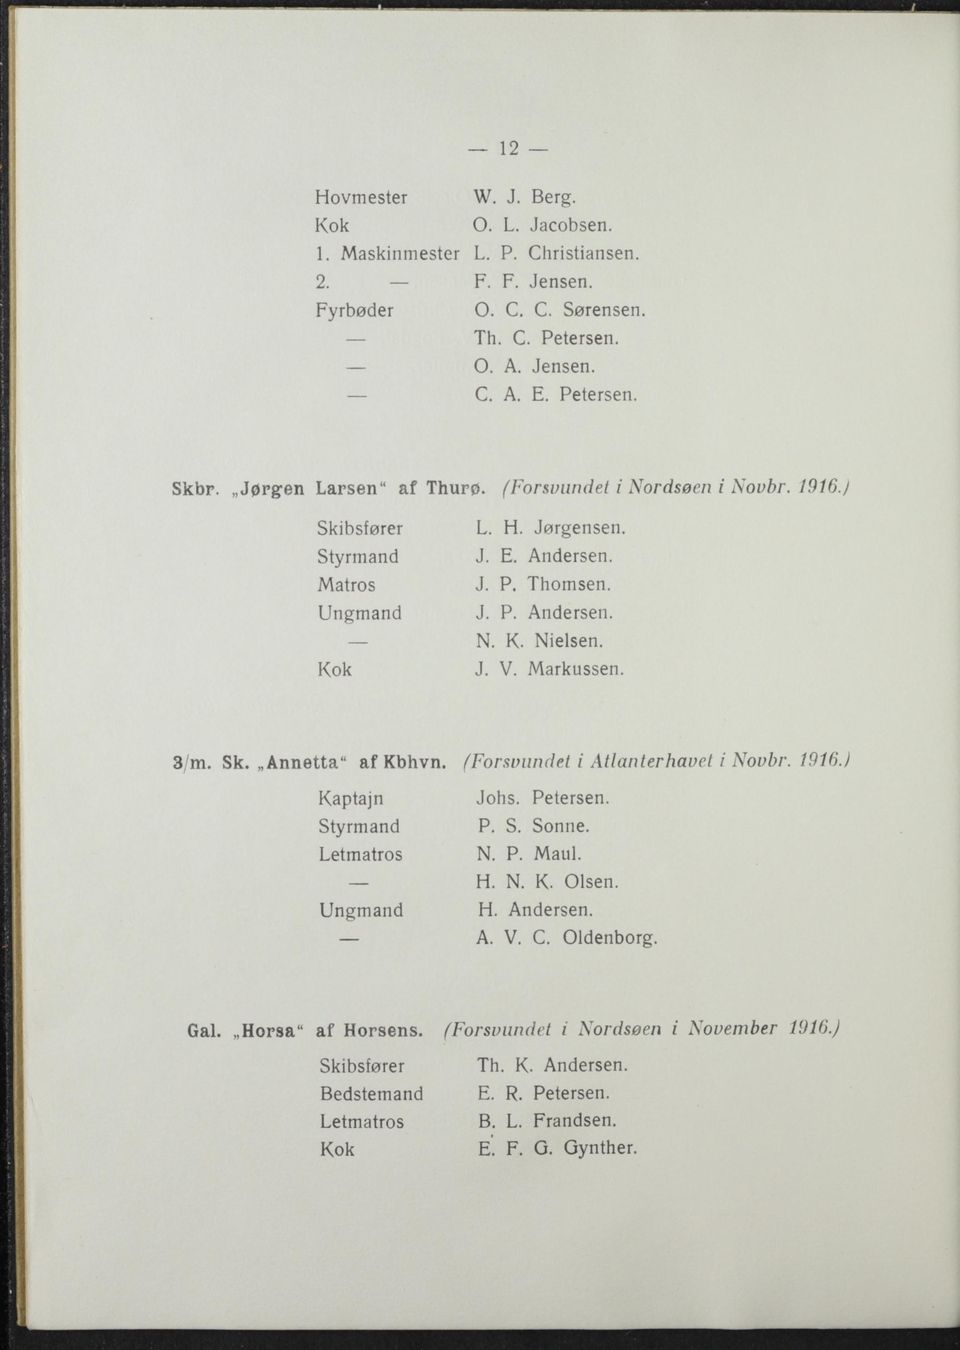 Markussen. 3/m. Sk. Annetta" af Kbhvn. Kaptajn Styrmand Ungmand (Forsvundet i Atlanterhavet i Novbr. 1916.) Johs. Petersen. P. S. Sonne. N. P. Maul. H. N. K. Olsen. H. Andersen.